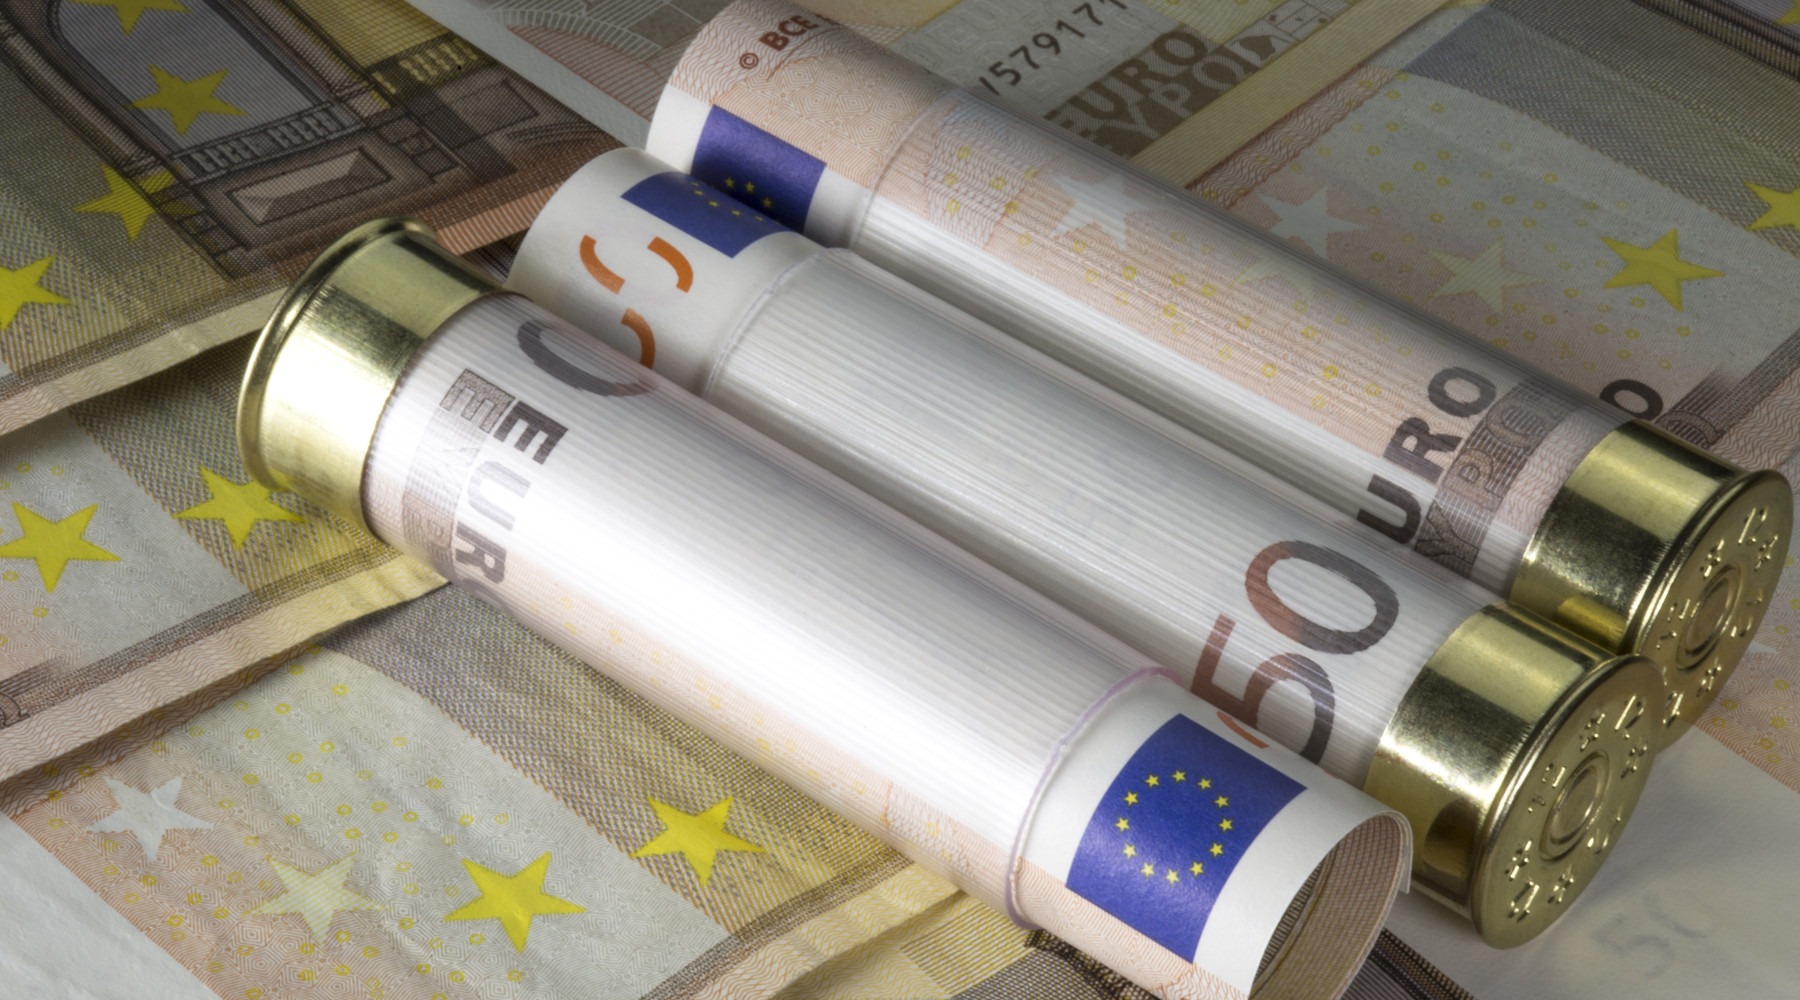 Valore economico della caccia: munizioni da caccia avvolte in banconote da 50 euro